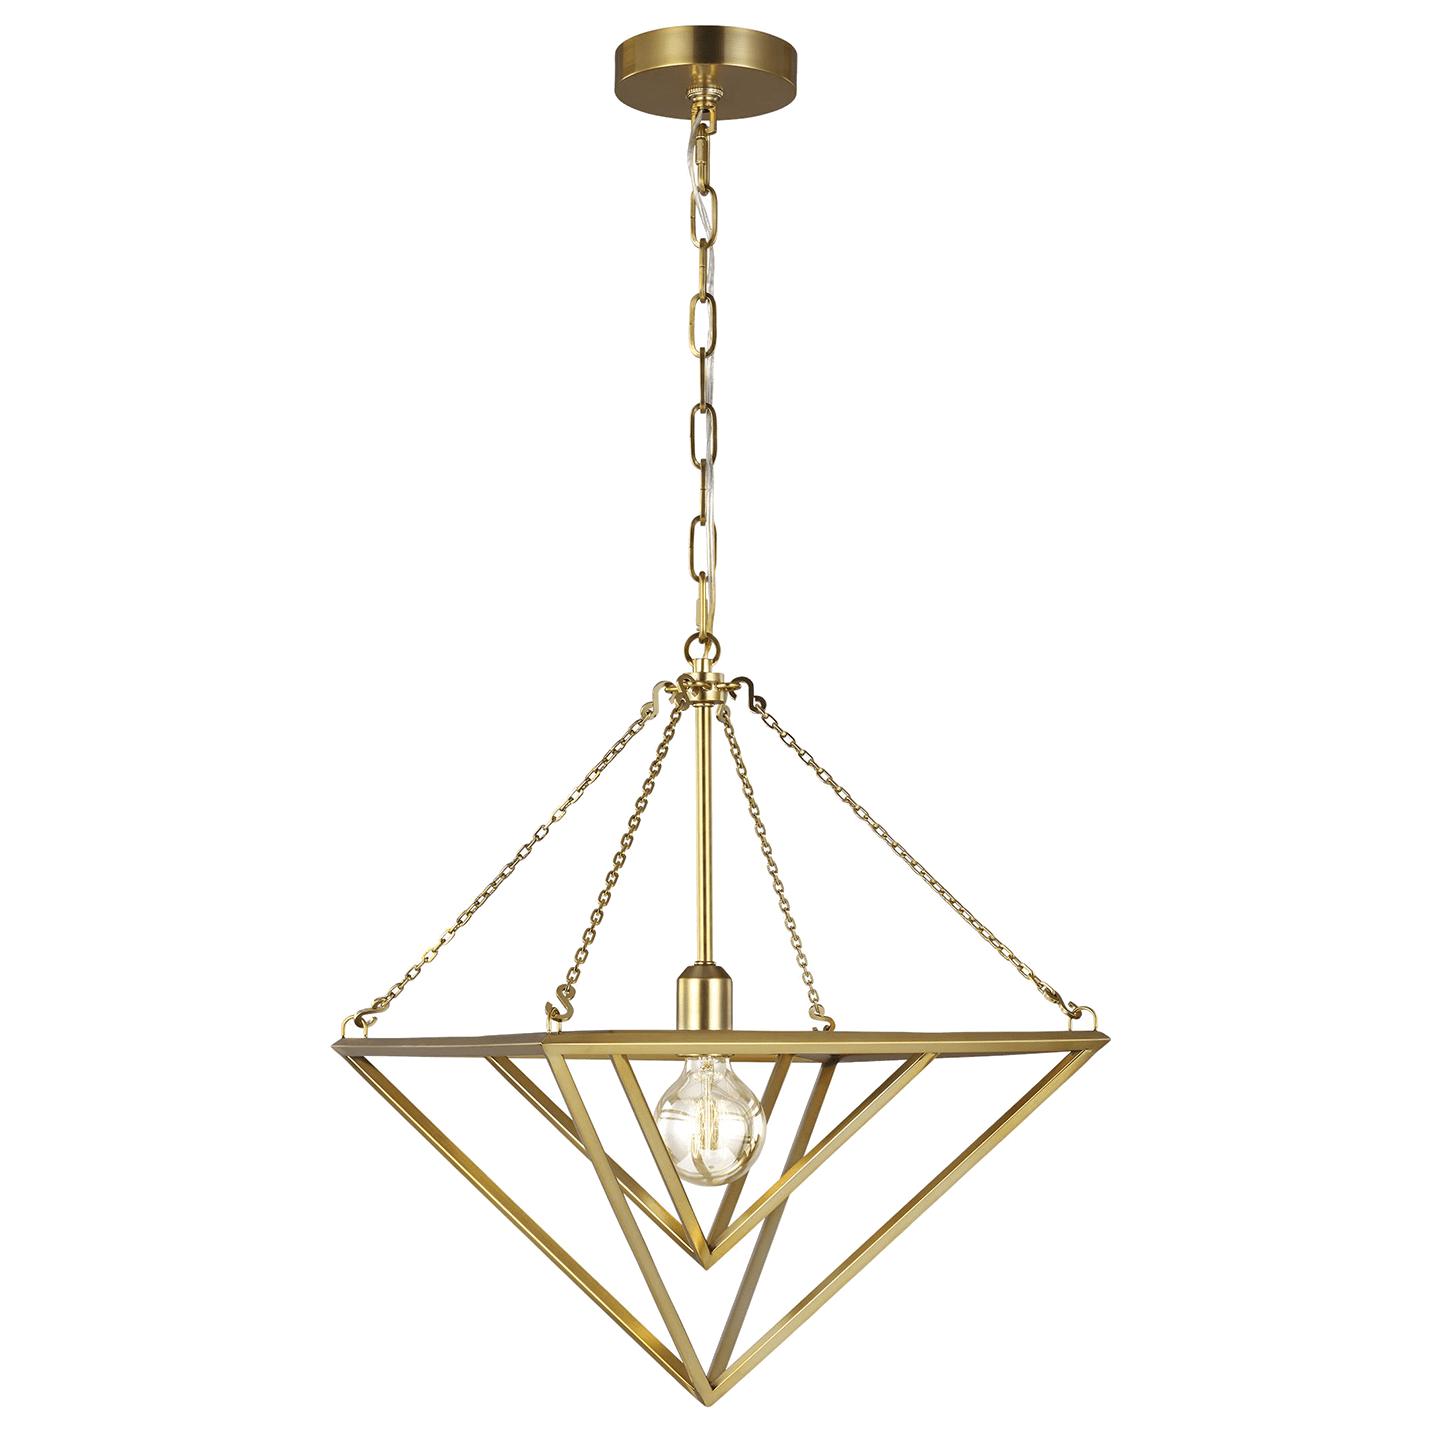 Купить Подвесной светильник Carat Small Pendant в интернет-магазине roooms.ru